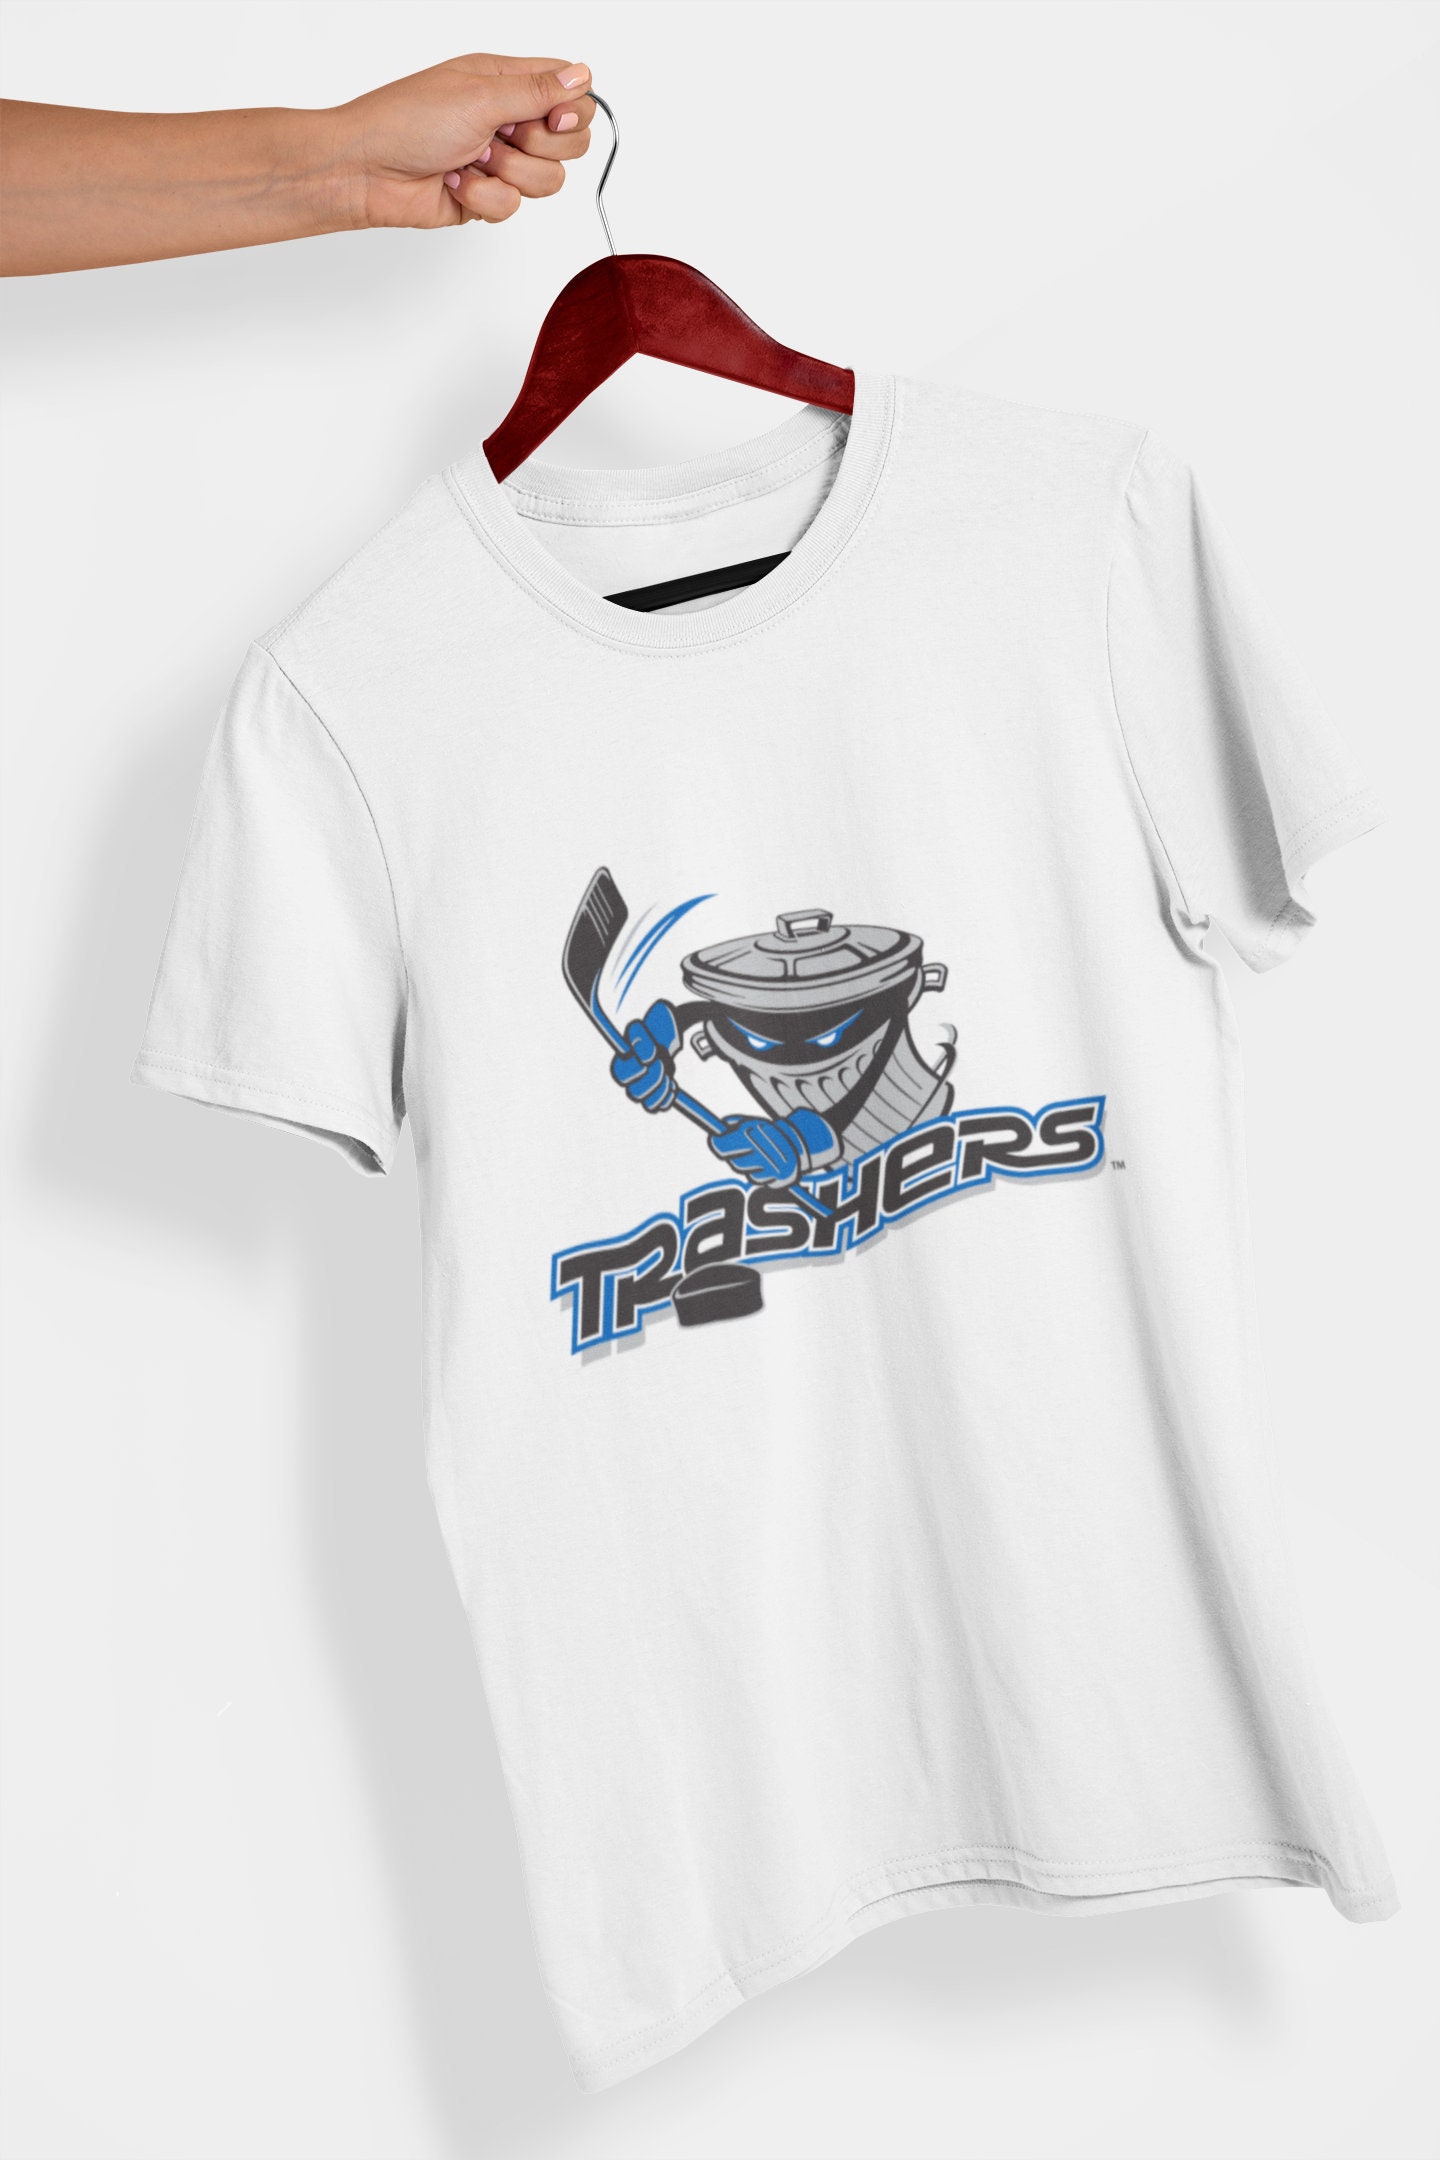 Danbury Trashers UHL Unisex Jersey Short Sleeve Hockey Shirt -  Sweden